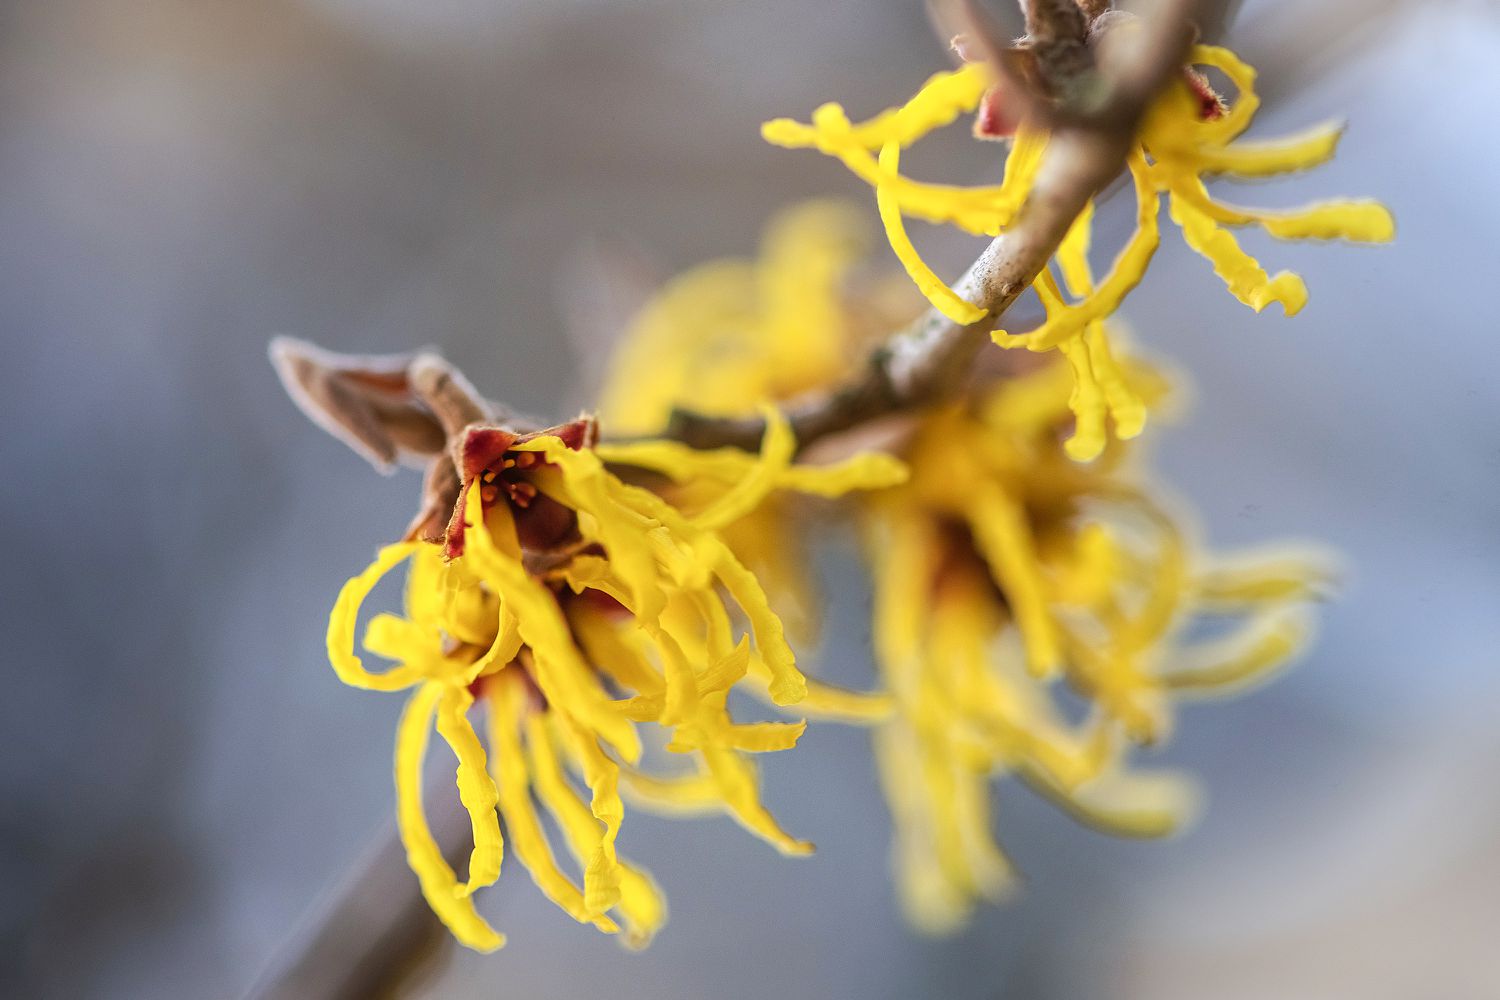 Hamameliszweig mit gelben, spinnenartigen Blüten in Großaufnahme